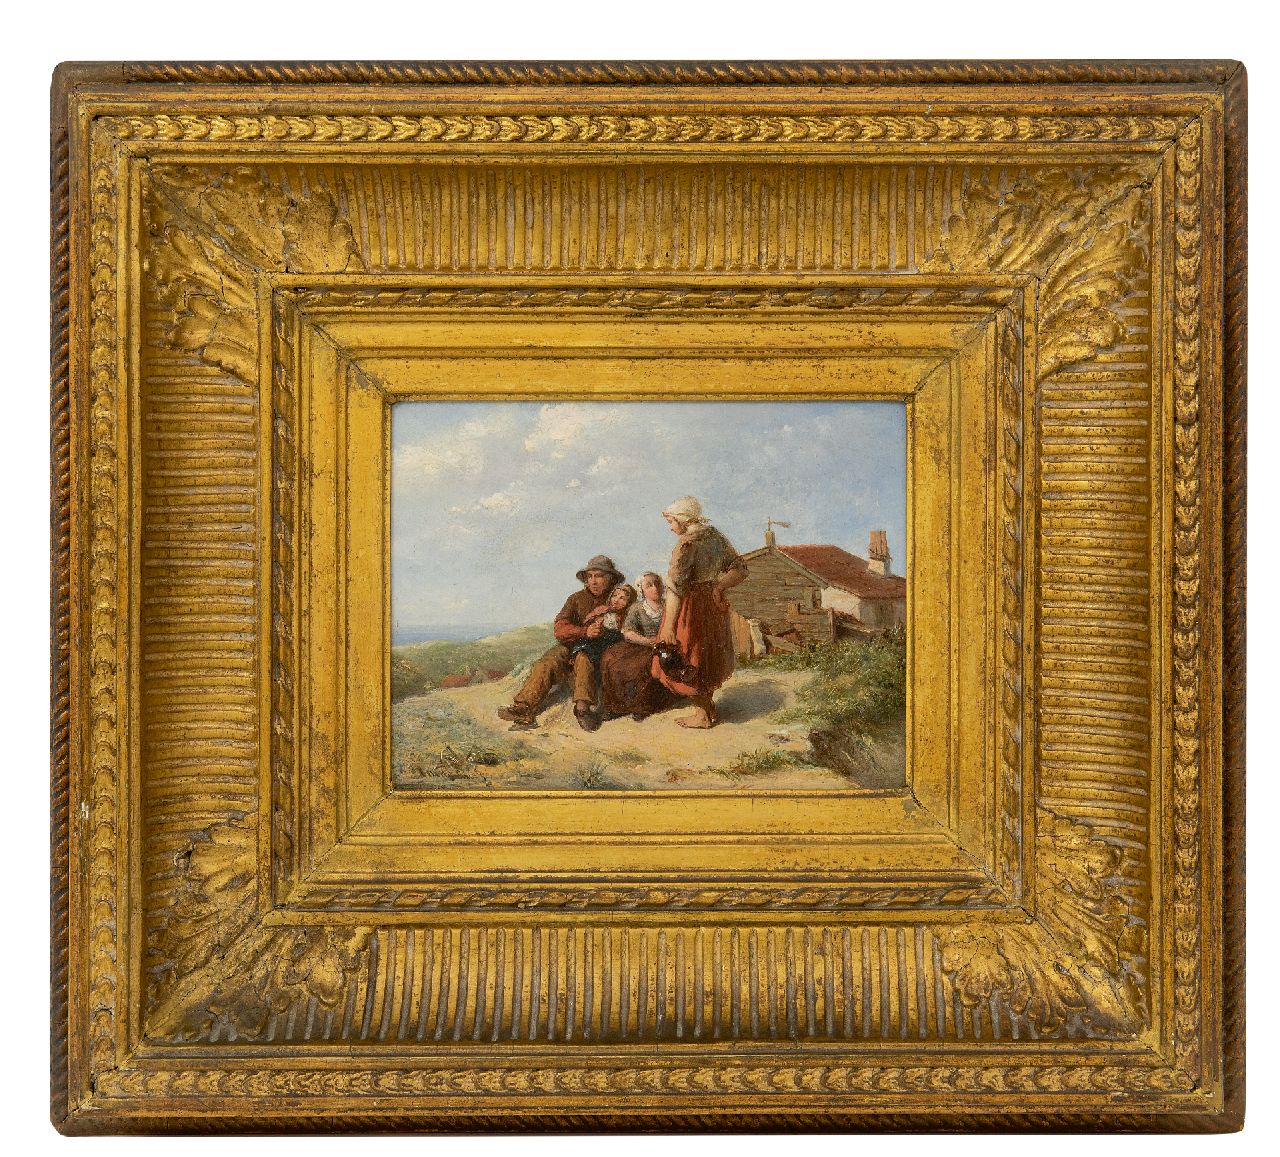 Bus J.M. de | Johannes Martinus de Bus | Schilderijen te koop aangeboden | Vissersfamilie in de duinen, olieverf op paneel 12,7 x 16,6 cm, gesigneerd linksonder